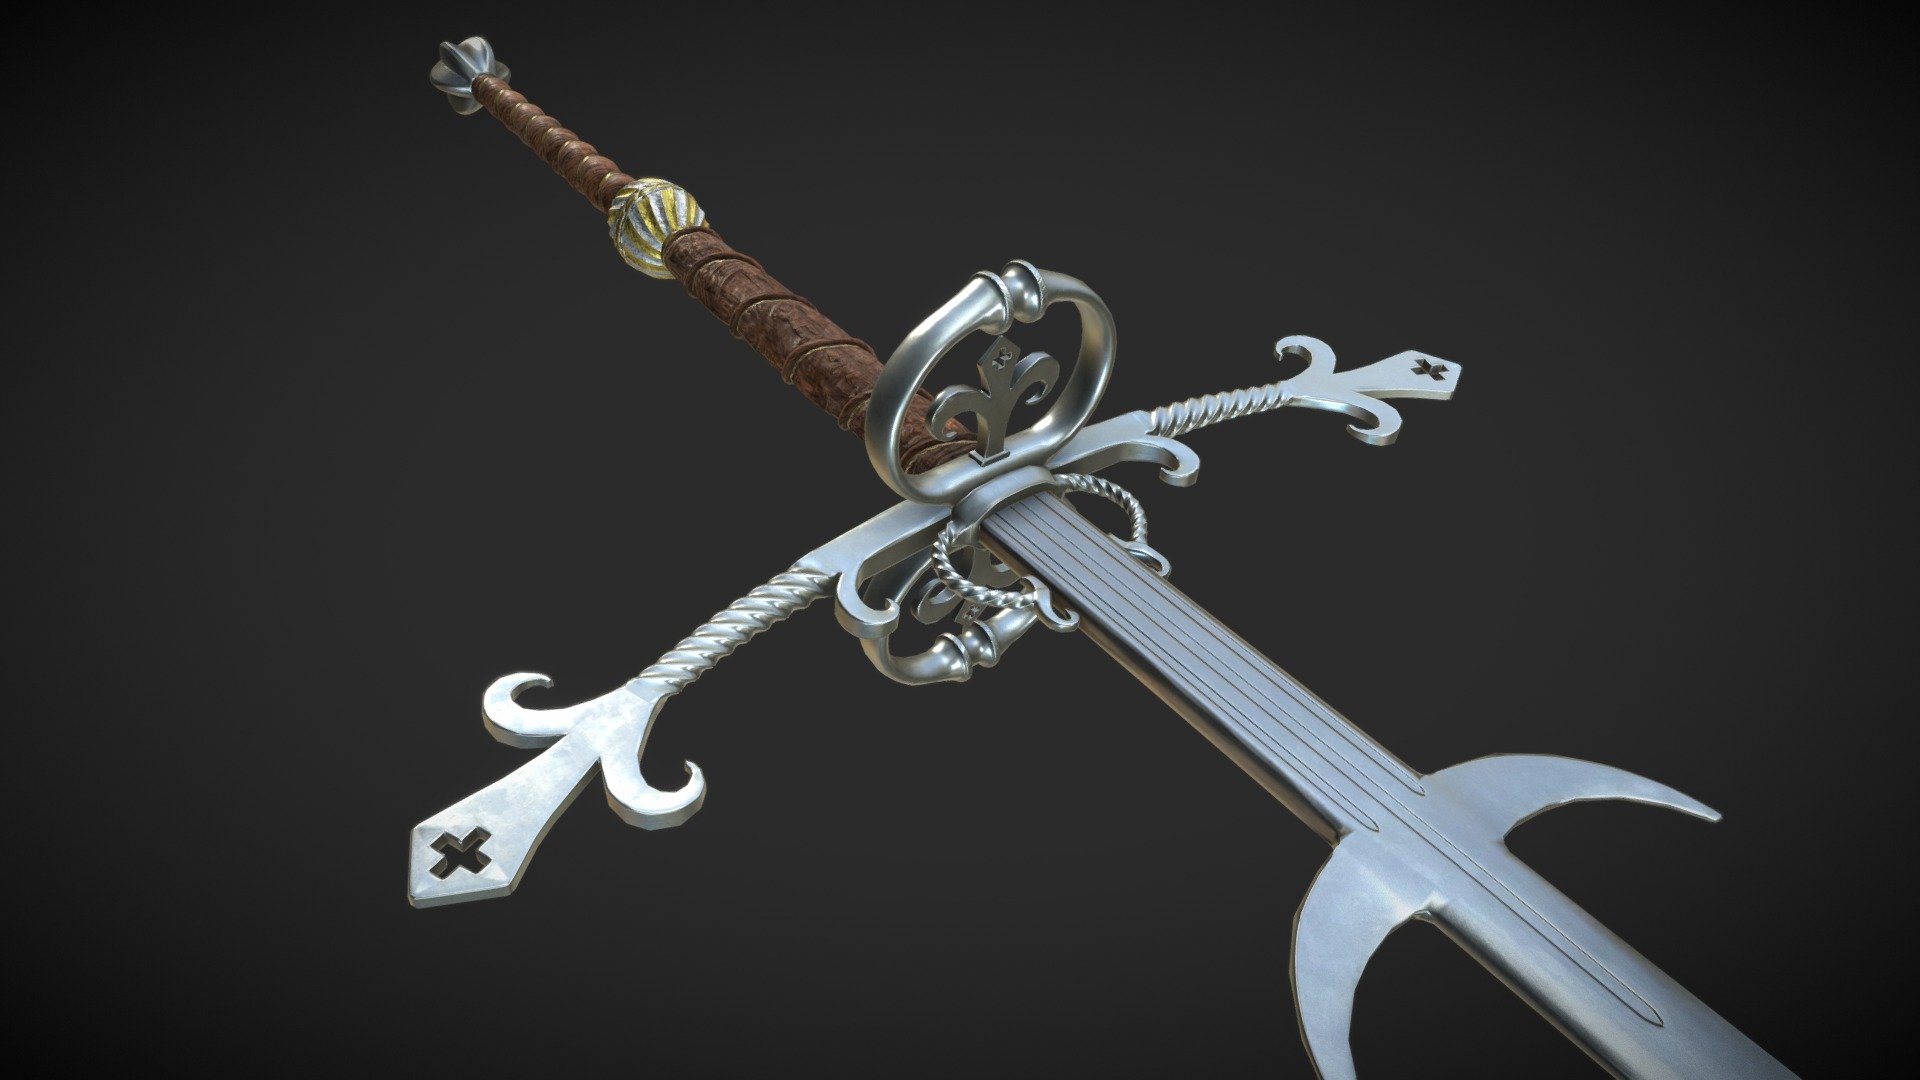 Боевые мечи мира, описание и классификация, большой двуручный, короткий одноручный, полуторный, типы и виды ножн